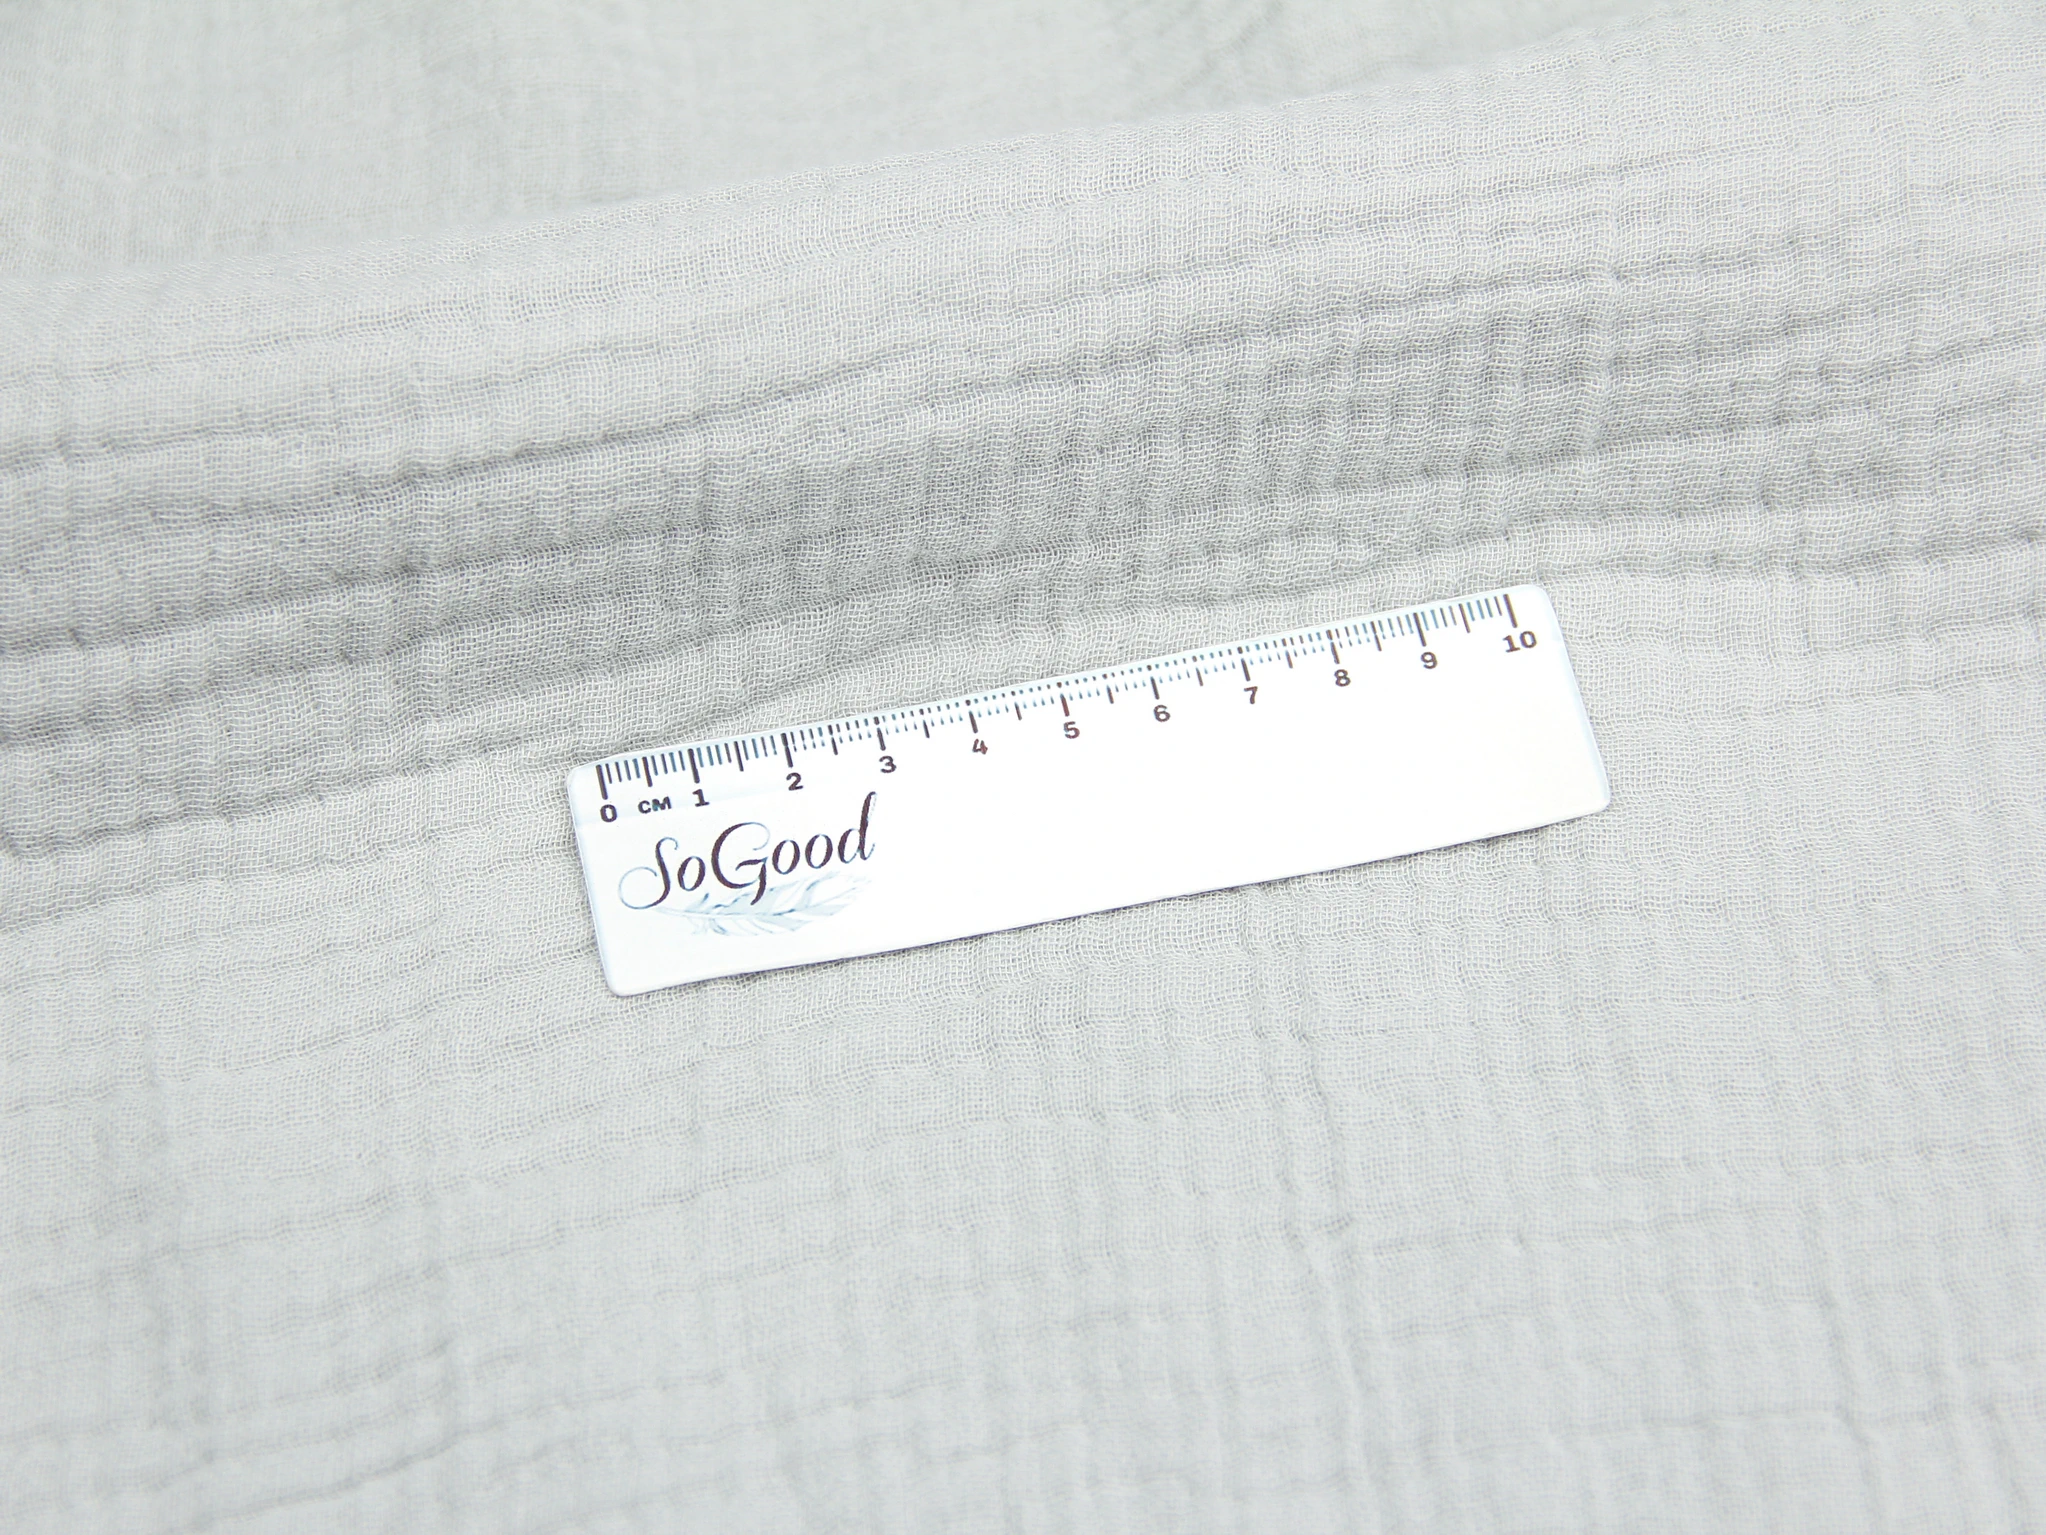 Тканина Муслін жатий чотиришаровий Сірий полин, Туреччина, щільність 220 г/м2, ширина 240 см